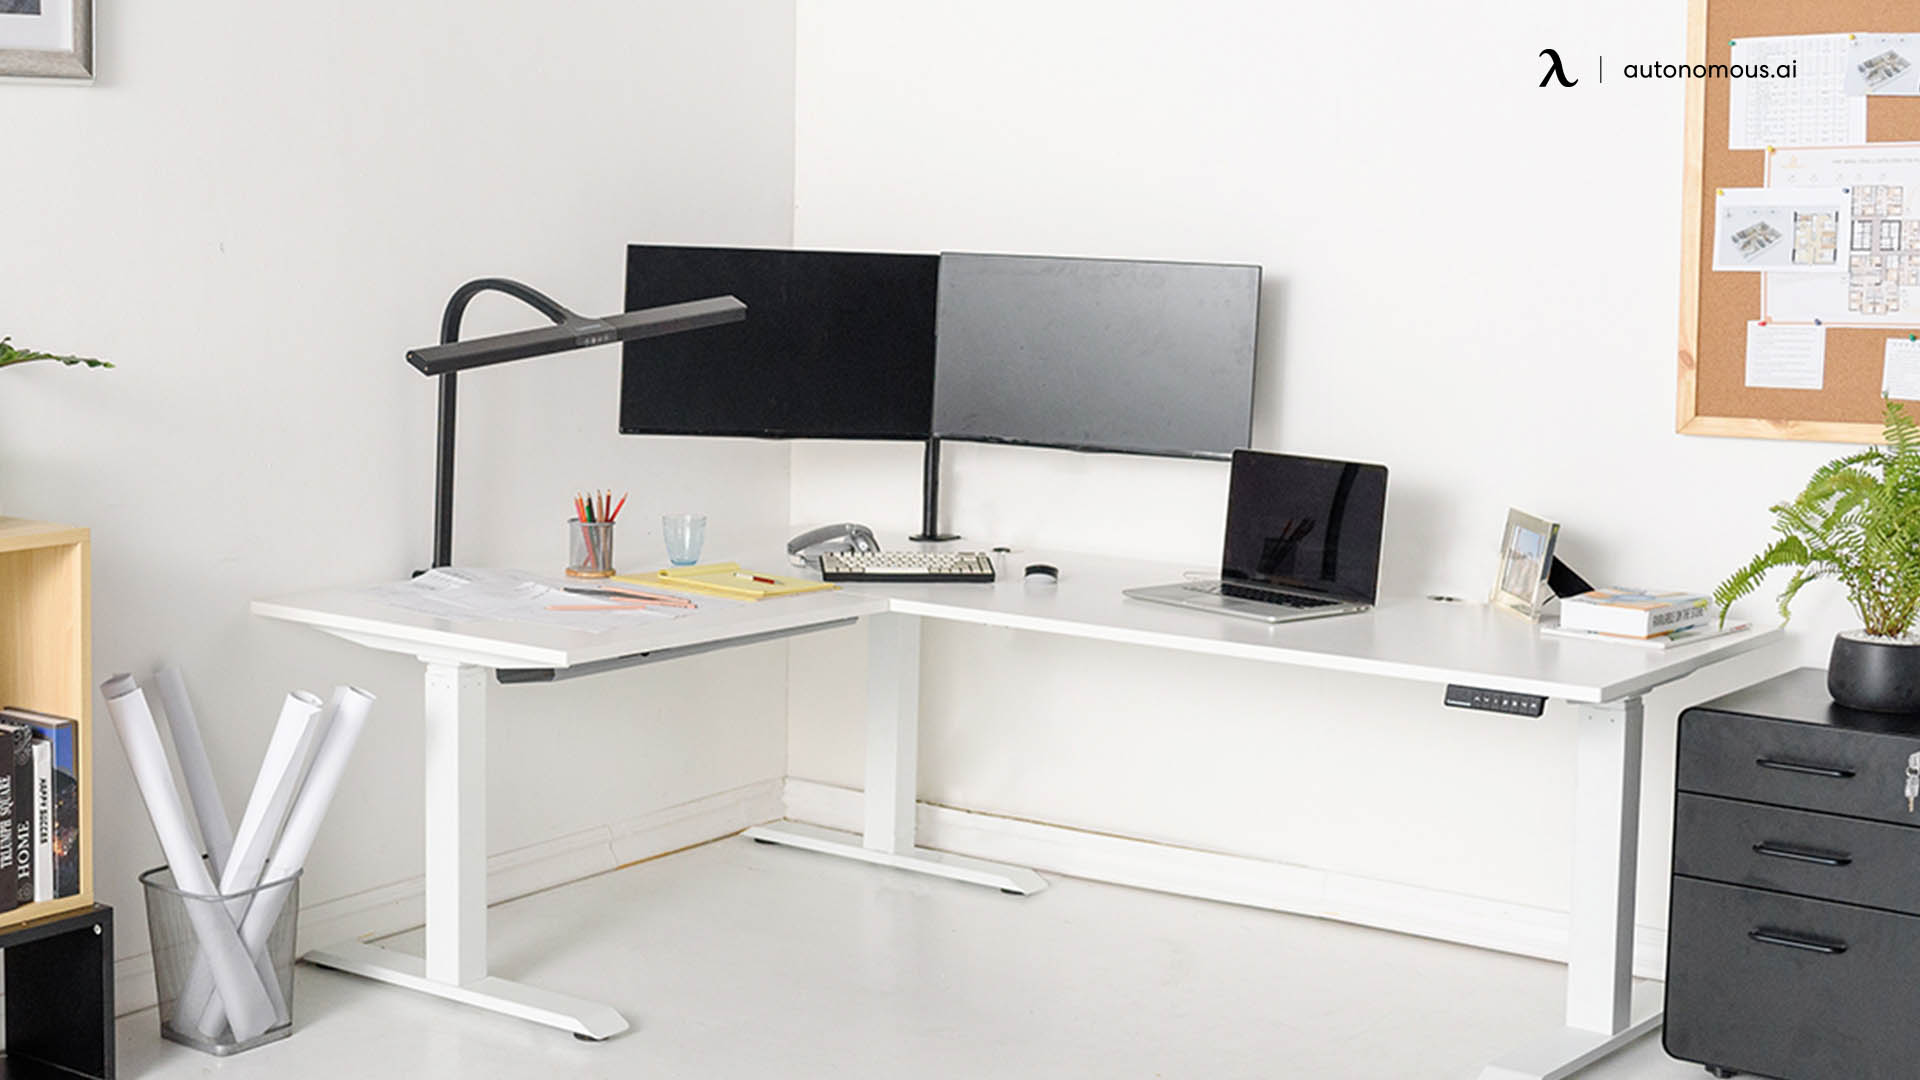 SmartDesk Corner easy assembly desk